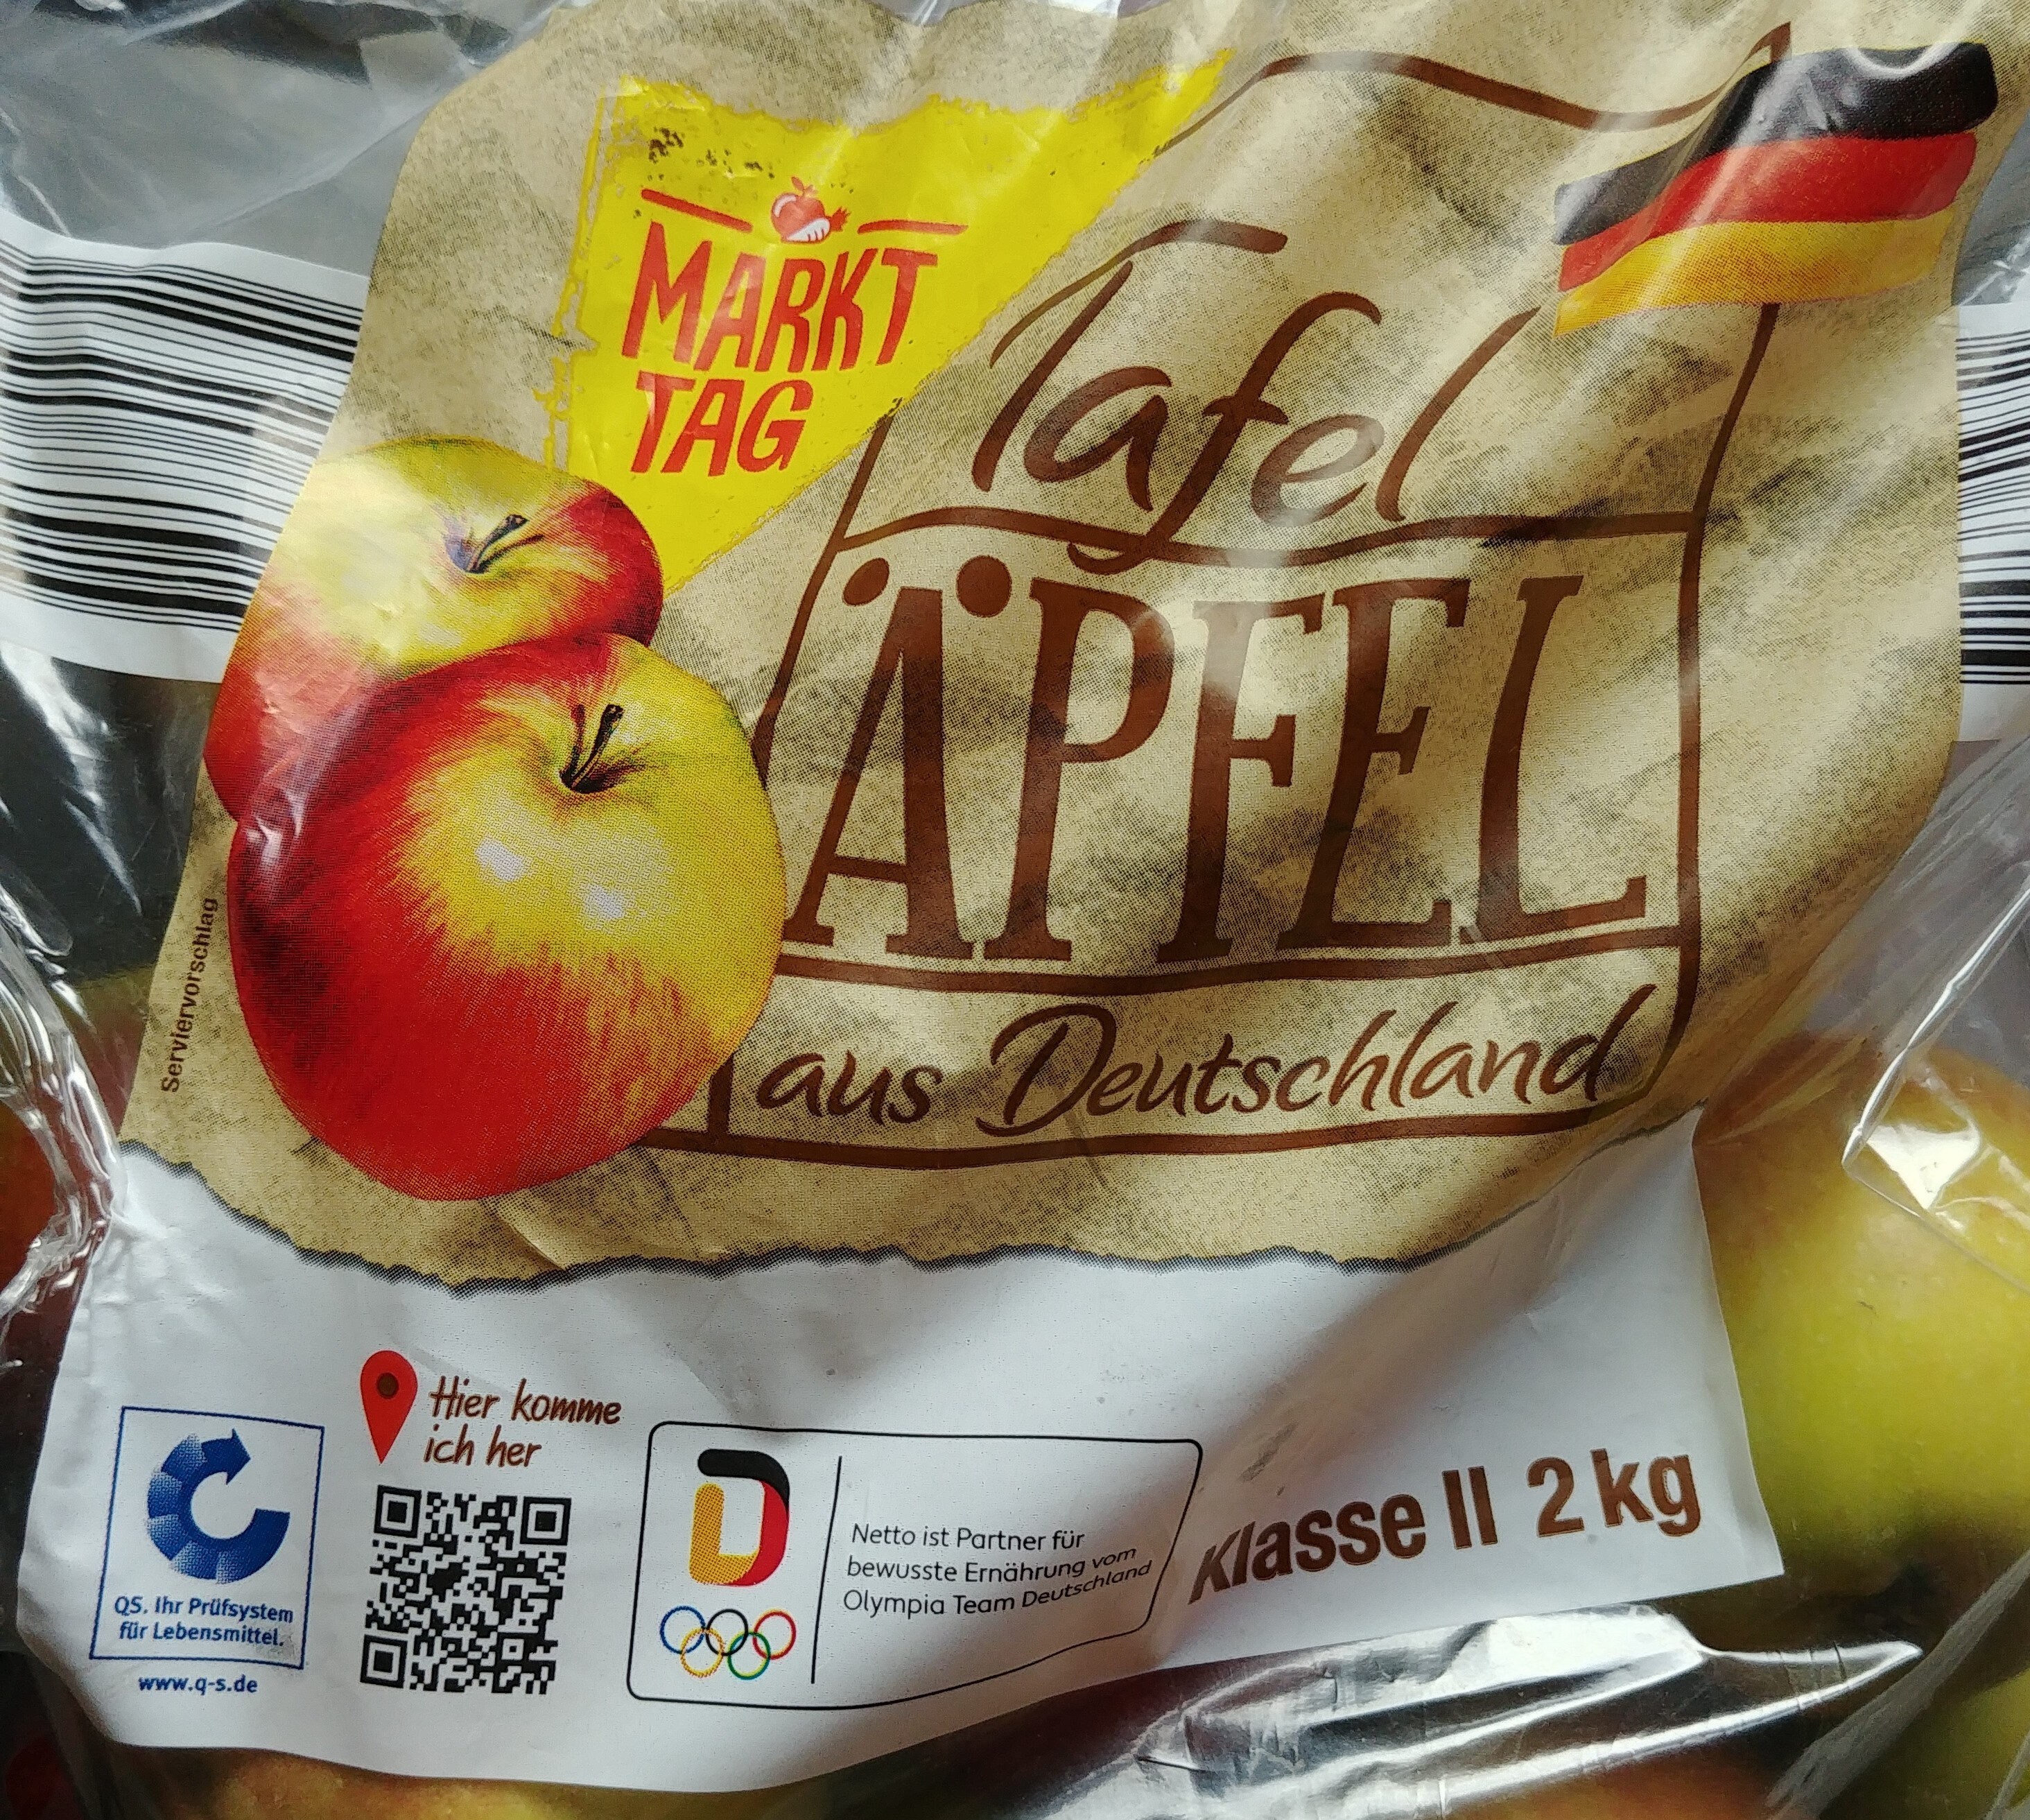 Tafel Äpfel - Product - de